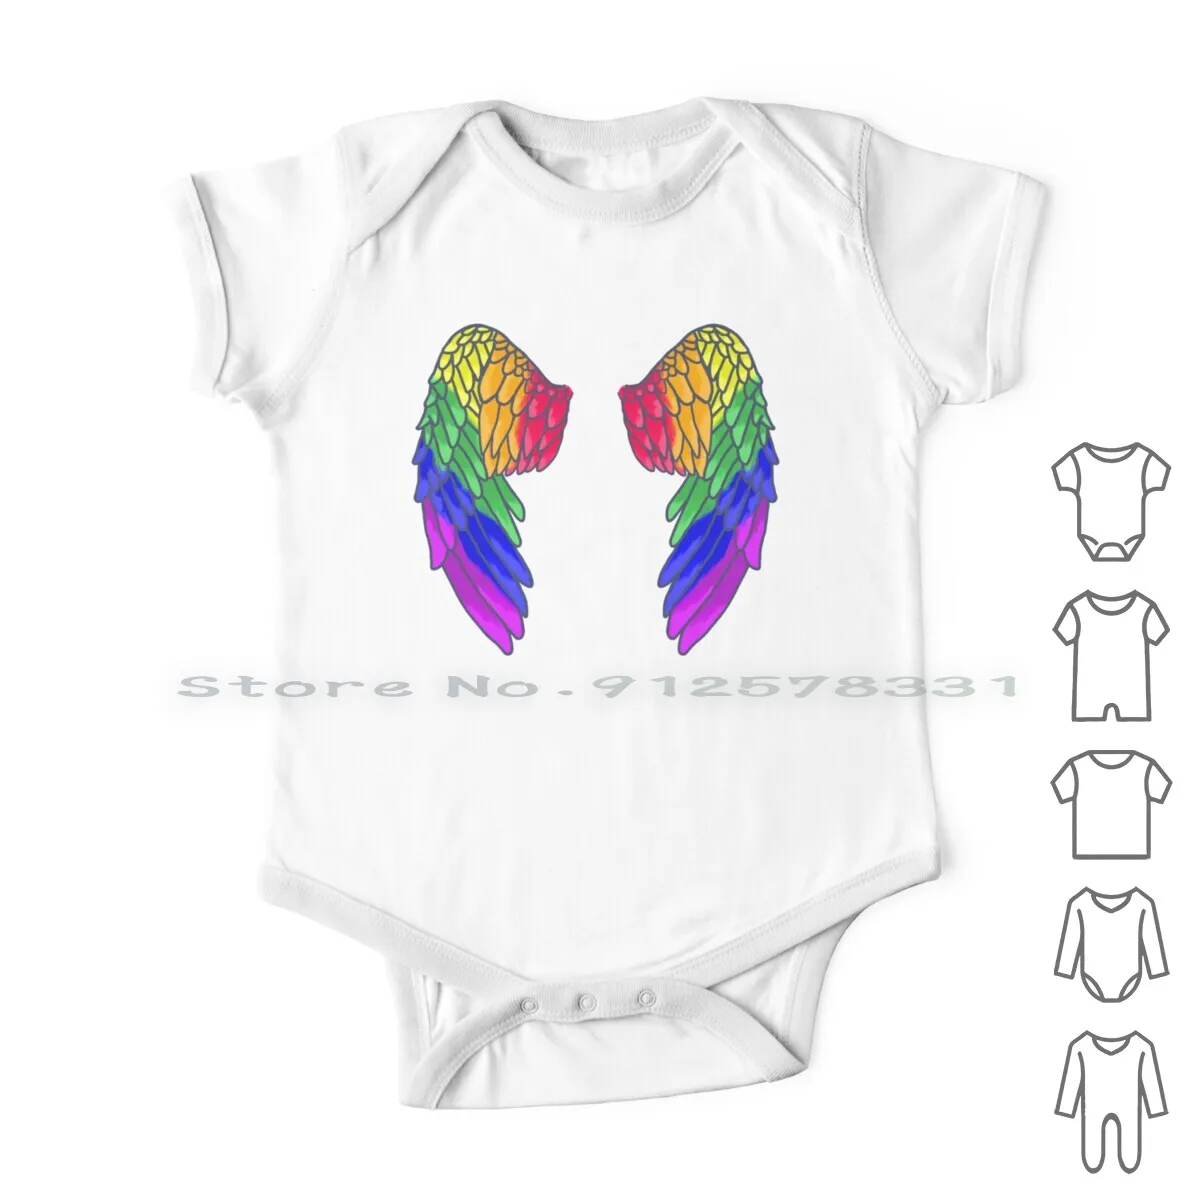 

Детский хлопковый комбинезон Pride Flight, длинный комбинезон для новорожденных, с флагом гордости, с перьями, ярко-розового цвета, для младенцев